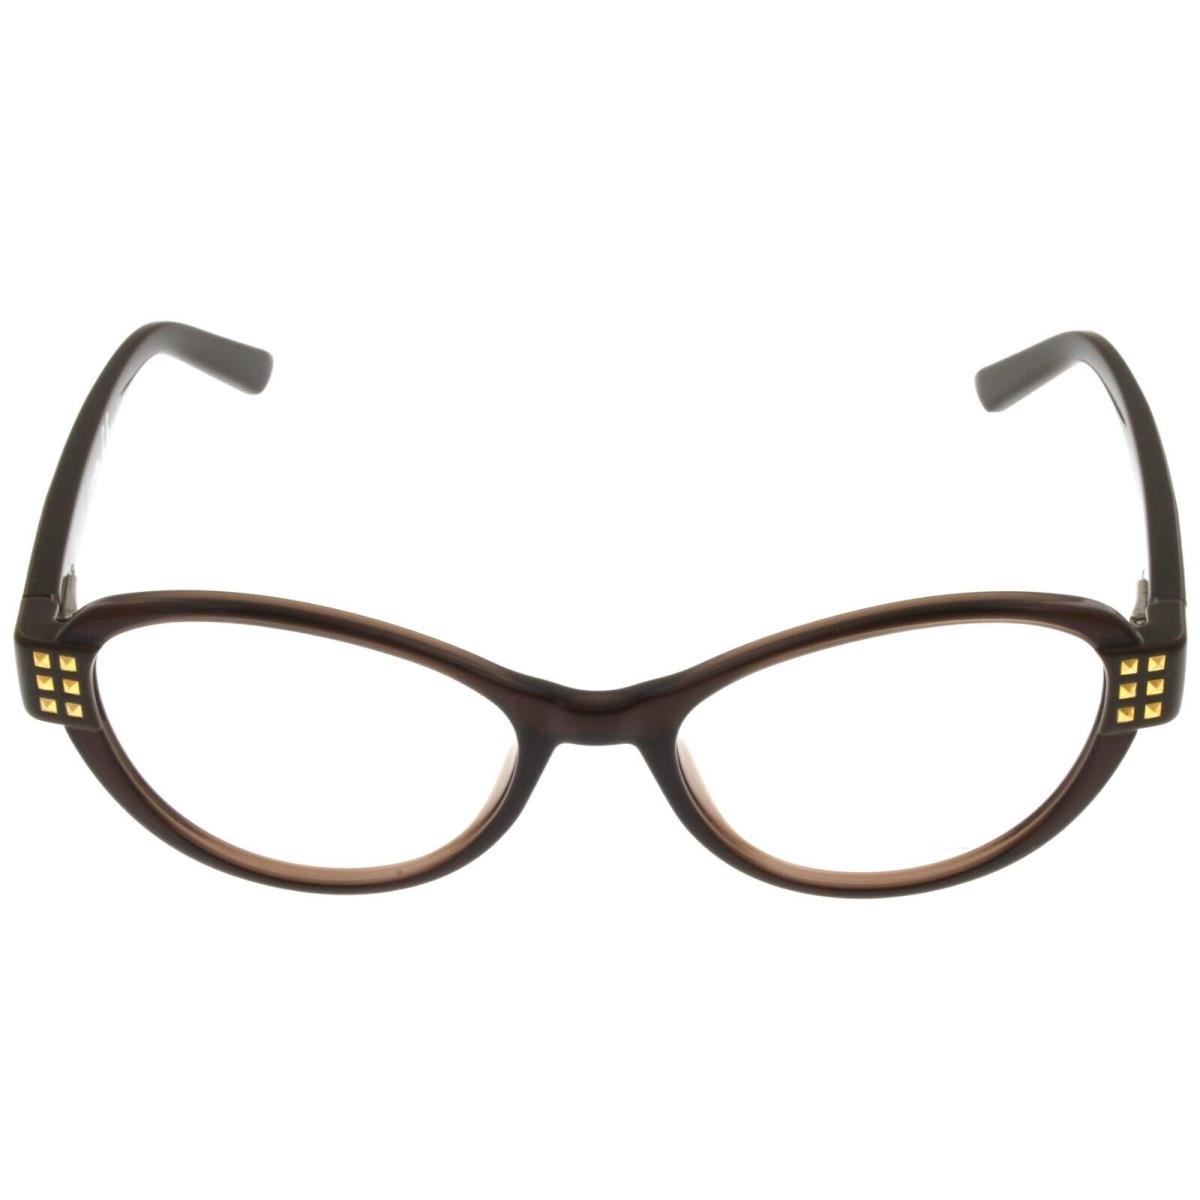 Diesel Eyeglasses Frame Women Brown Oval DL5011 048